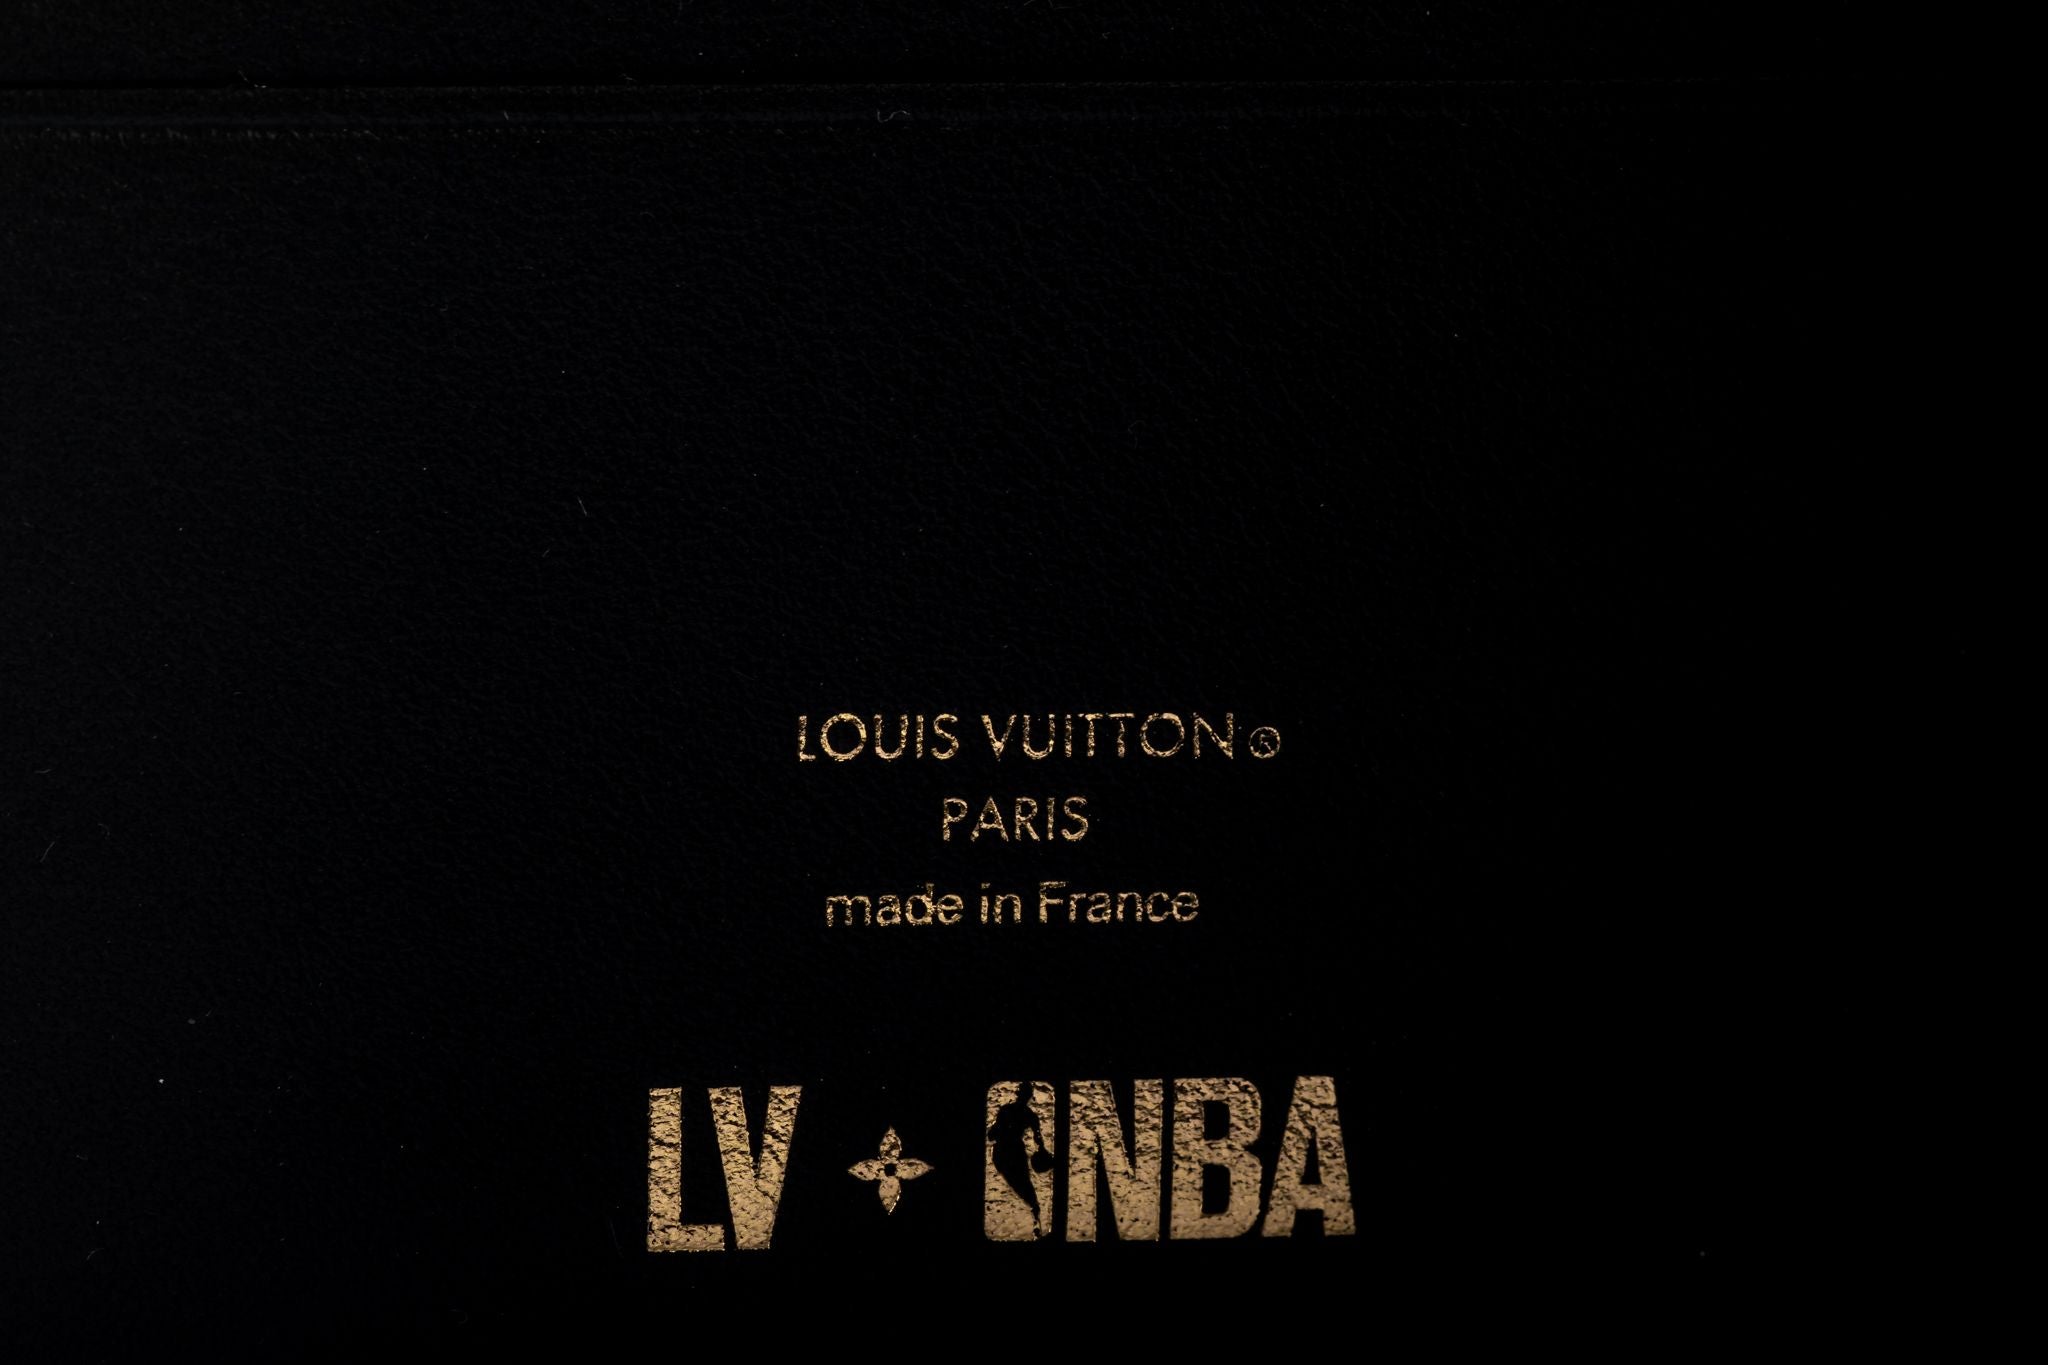 Louis Vuitton Nba Wallet